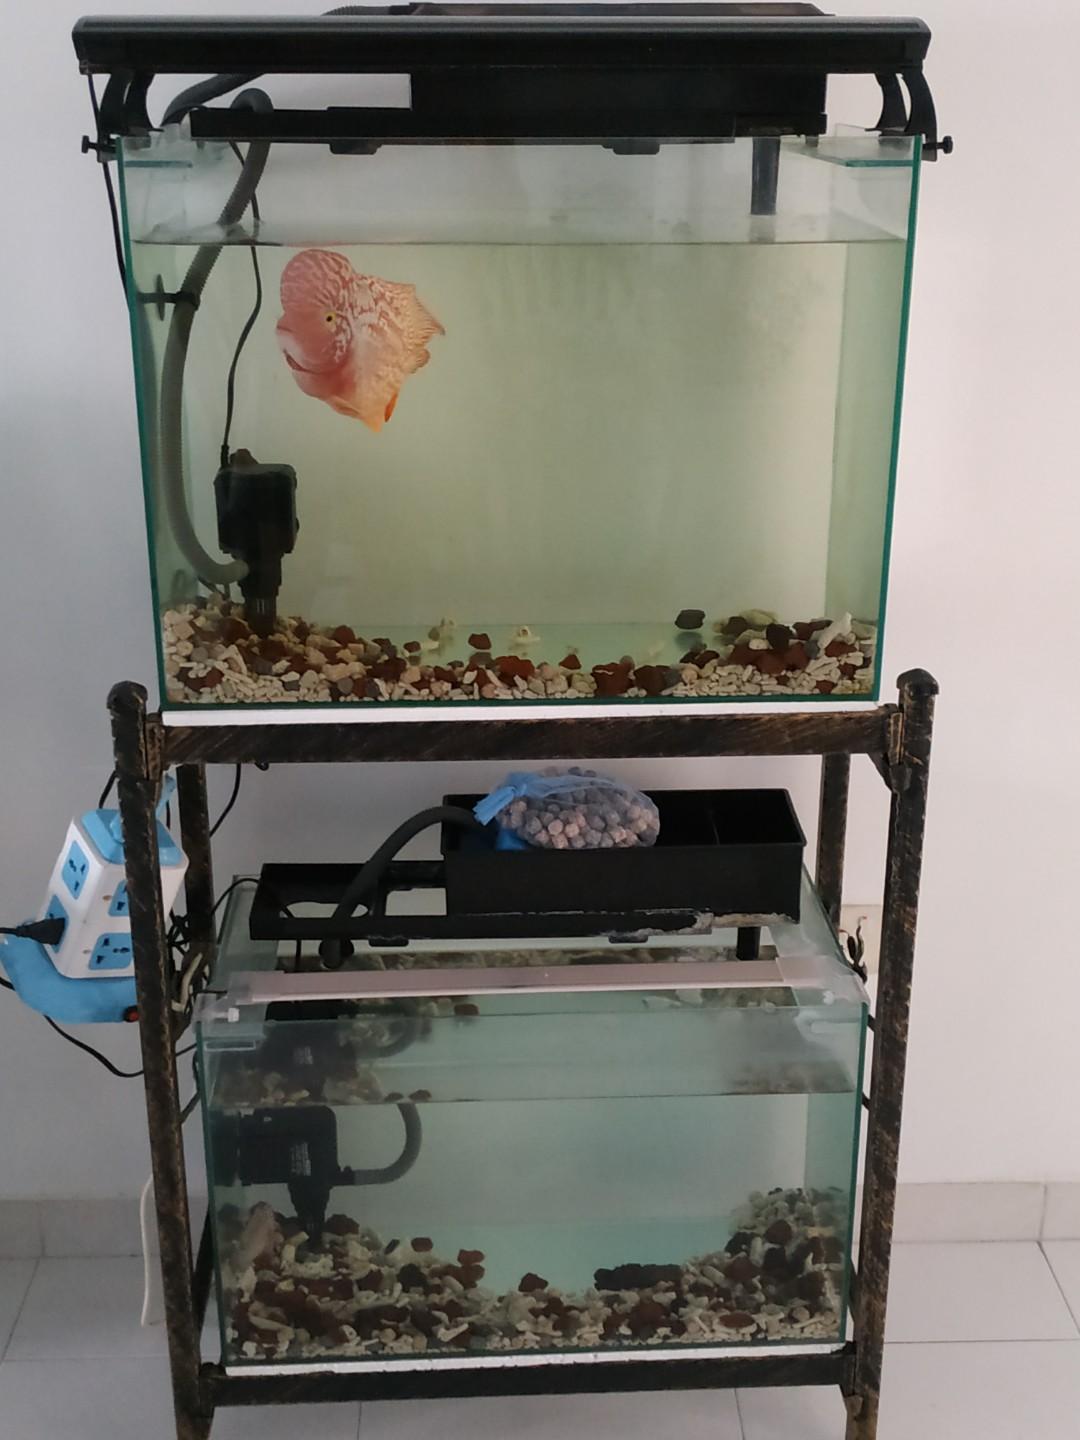 fish tank stand price